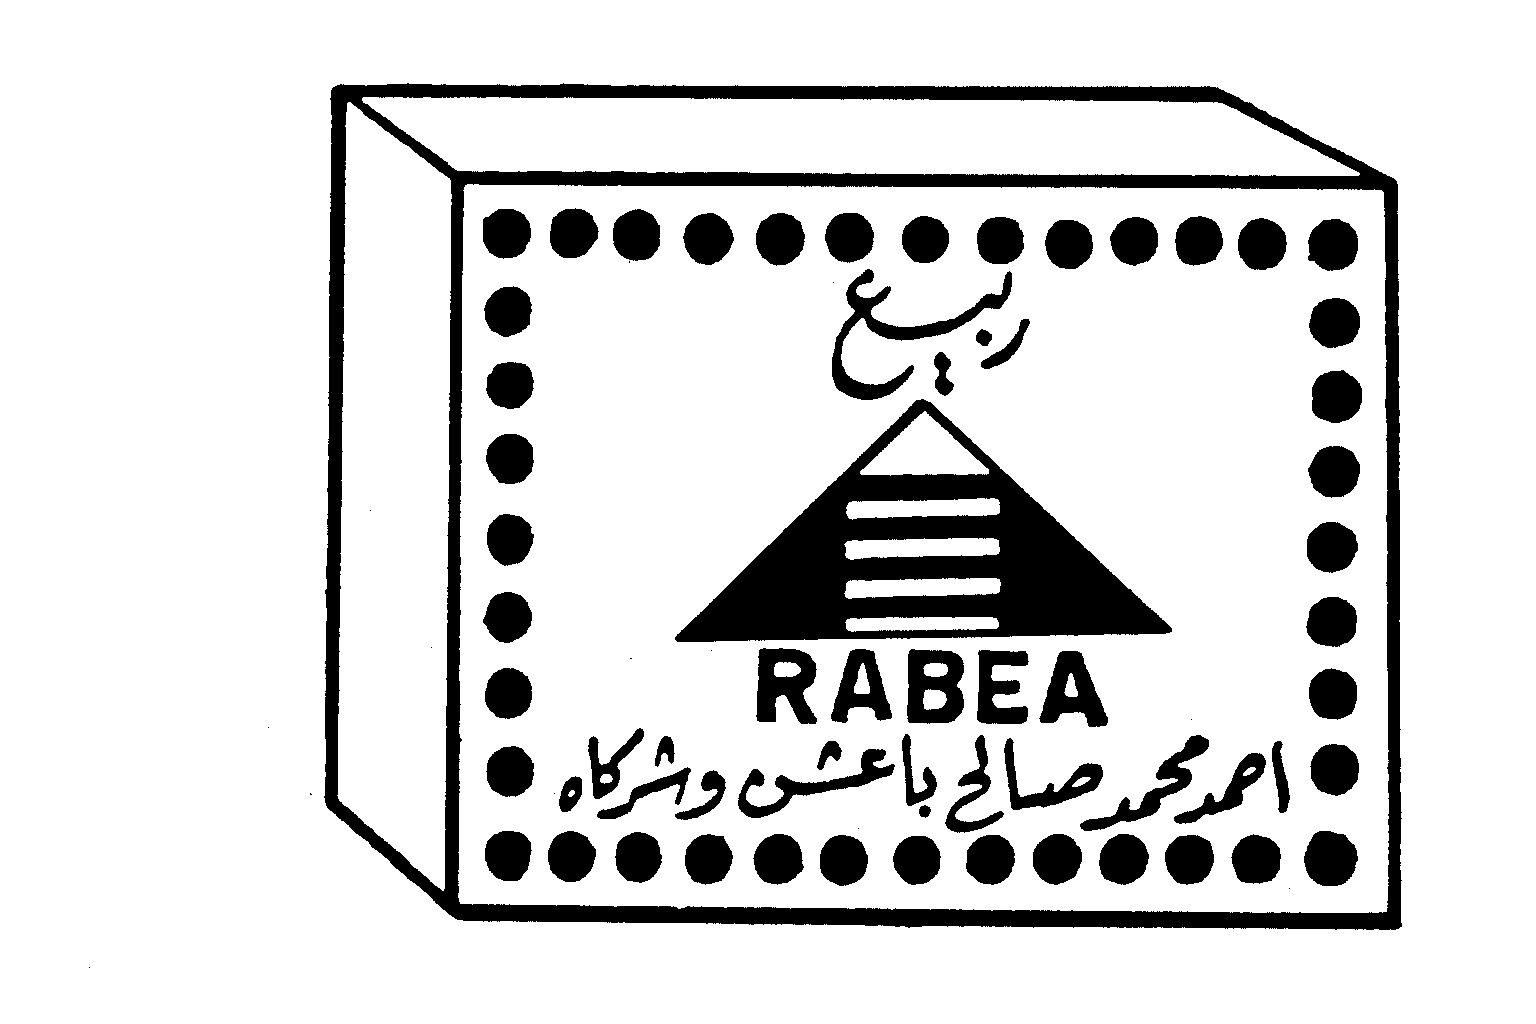 RABEA